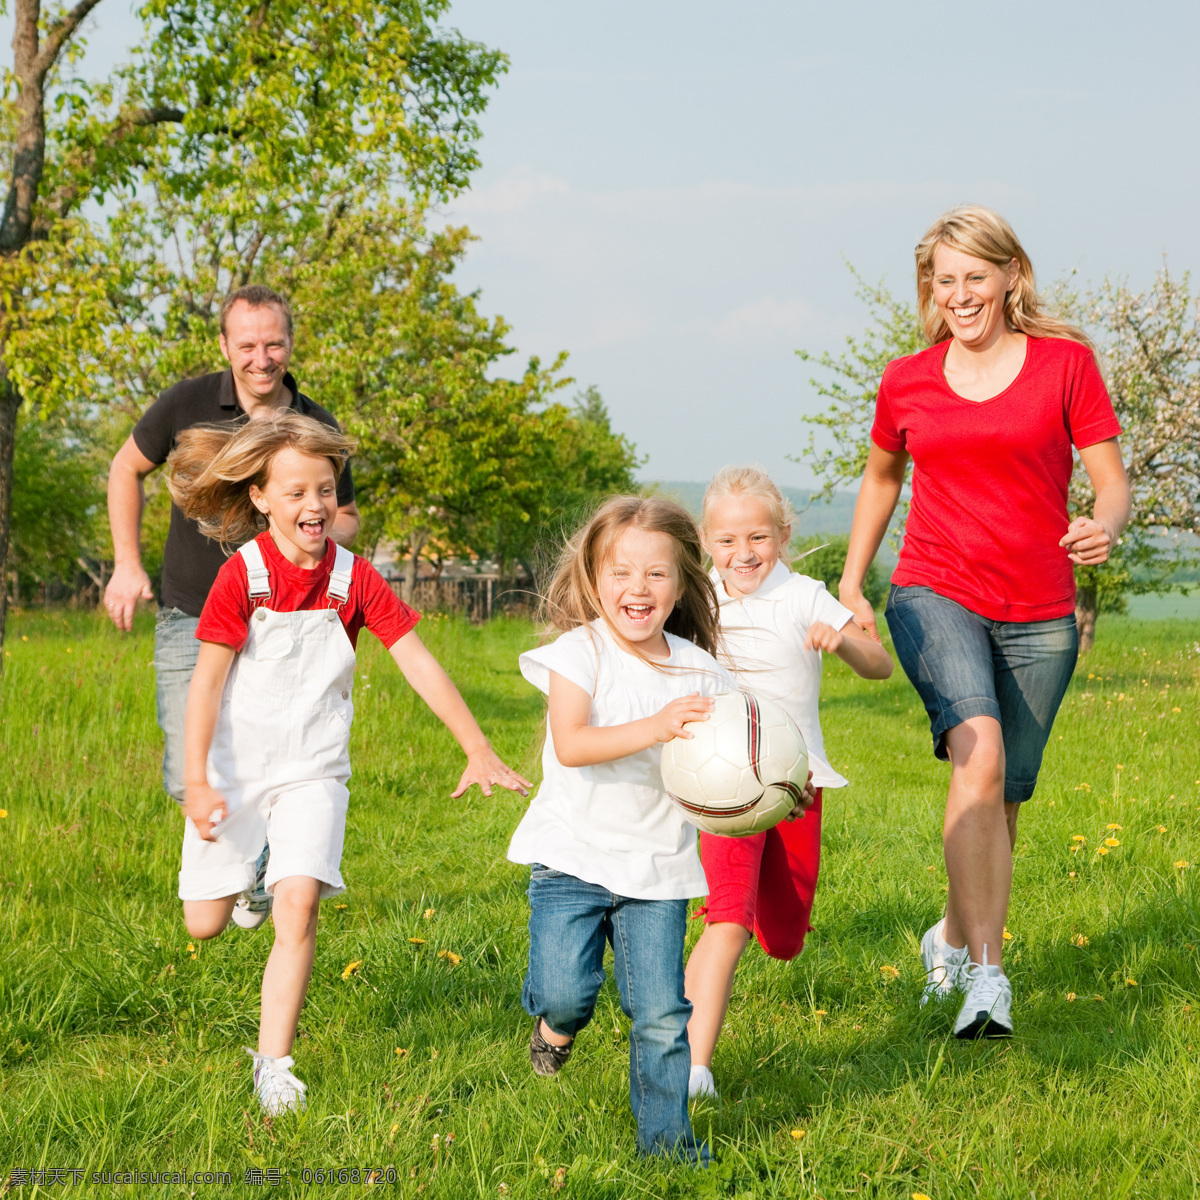 草地 上 玩耍 快乐 家庭 快乐家庭 欢乐 欢笑 和谐 幸福家庭 一家五口 郊游 户外 外国家庭 人物 高清图片 家庭图片 人物图片